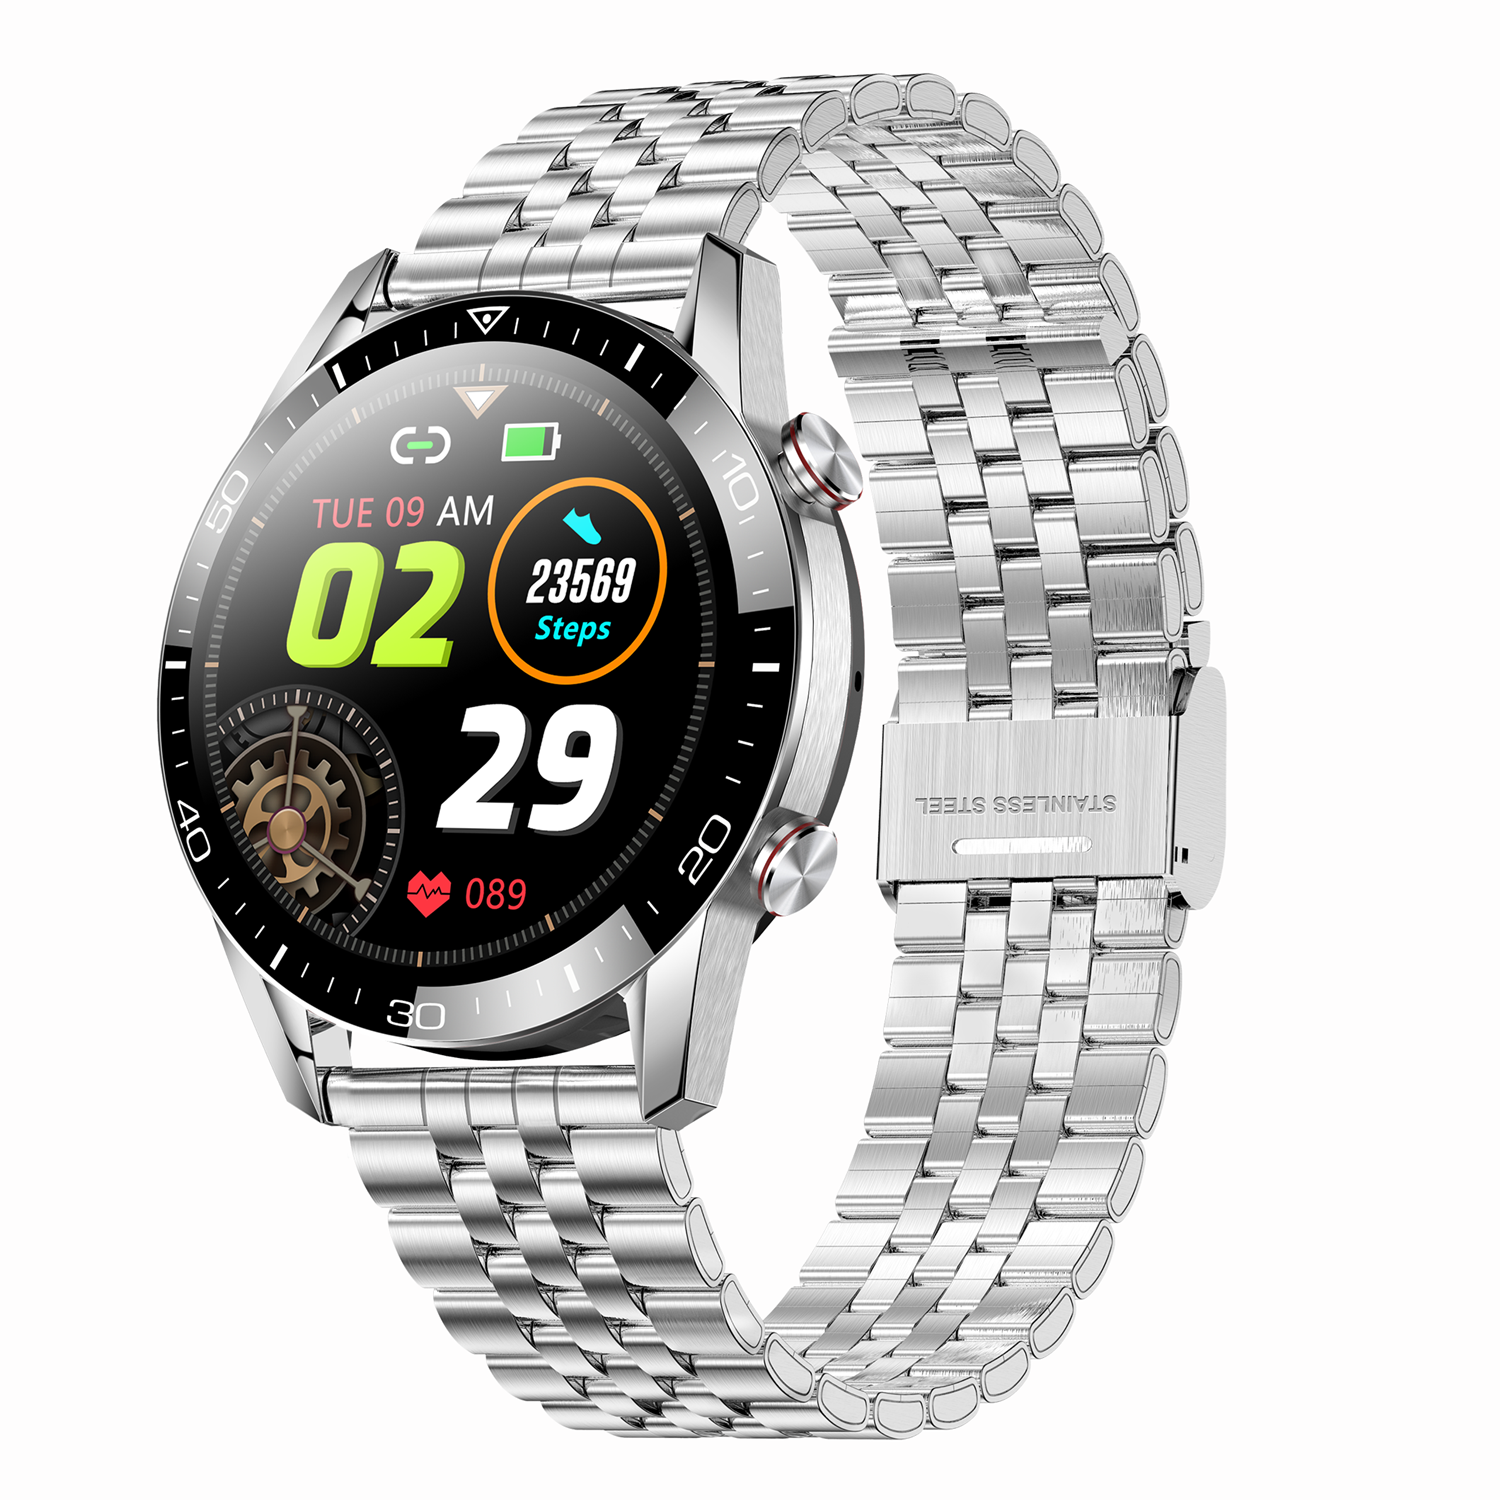 Zcwatch ZC-V1221 Çelik Kordonlu Akıllı Saat (Distribütör Garantili)